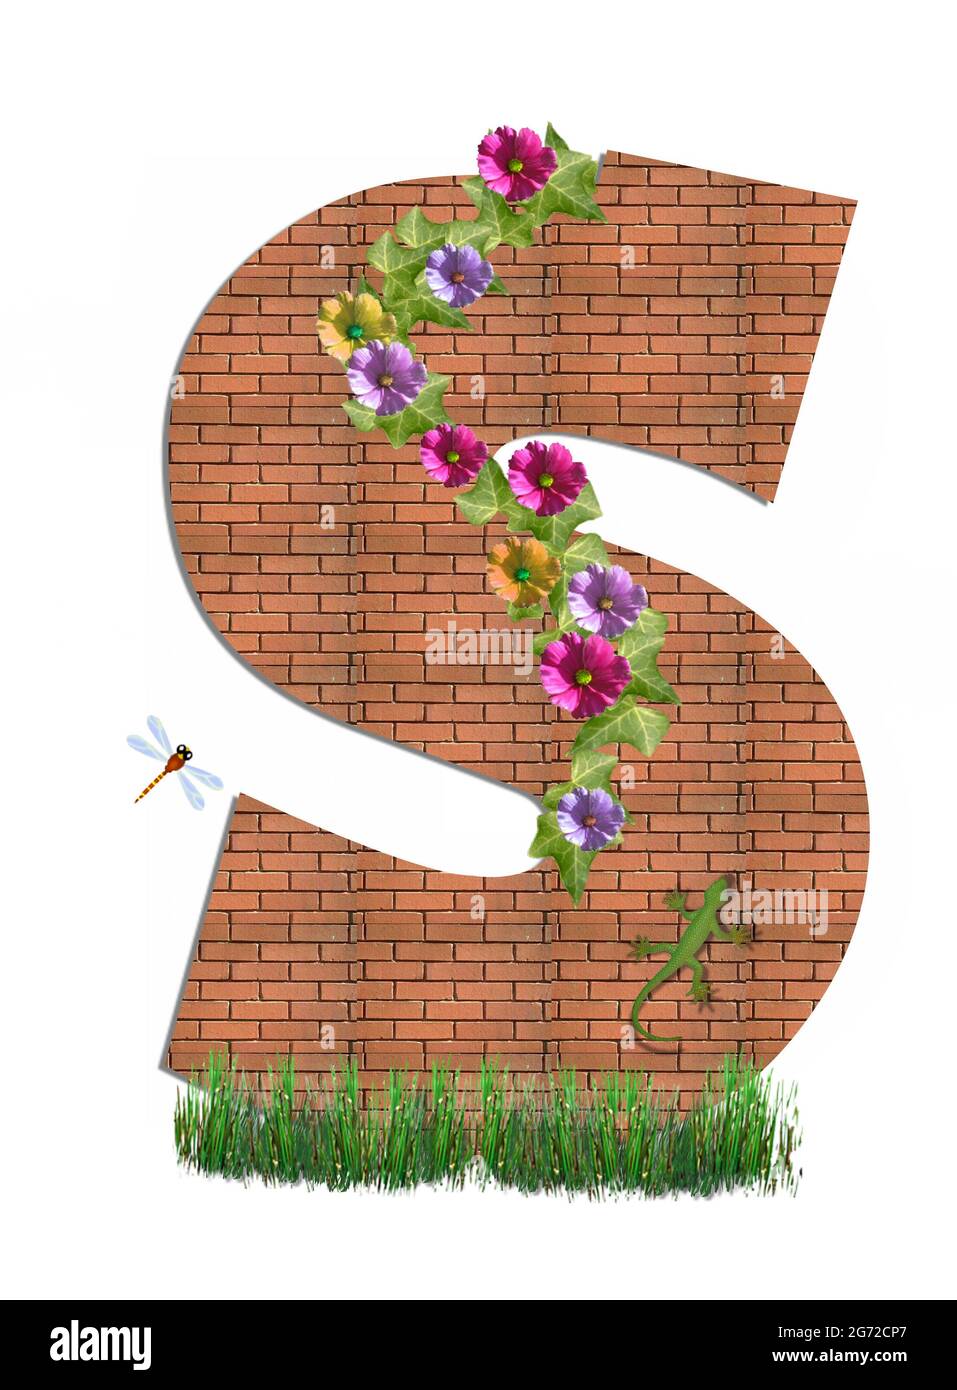 S im Alphabet-Set 'Garden Brick Wall' ist mit wachsenden Reben und Blumen geschmückt. Eine Eidechse und Libelle finden ihr Zuhause auf der Ziegeloberfläche. G Stockfoto